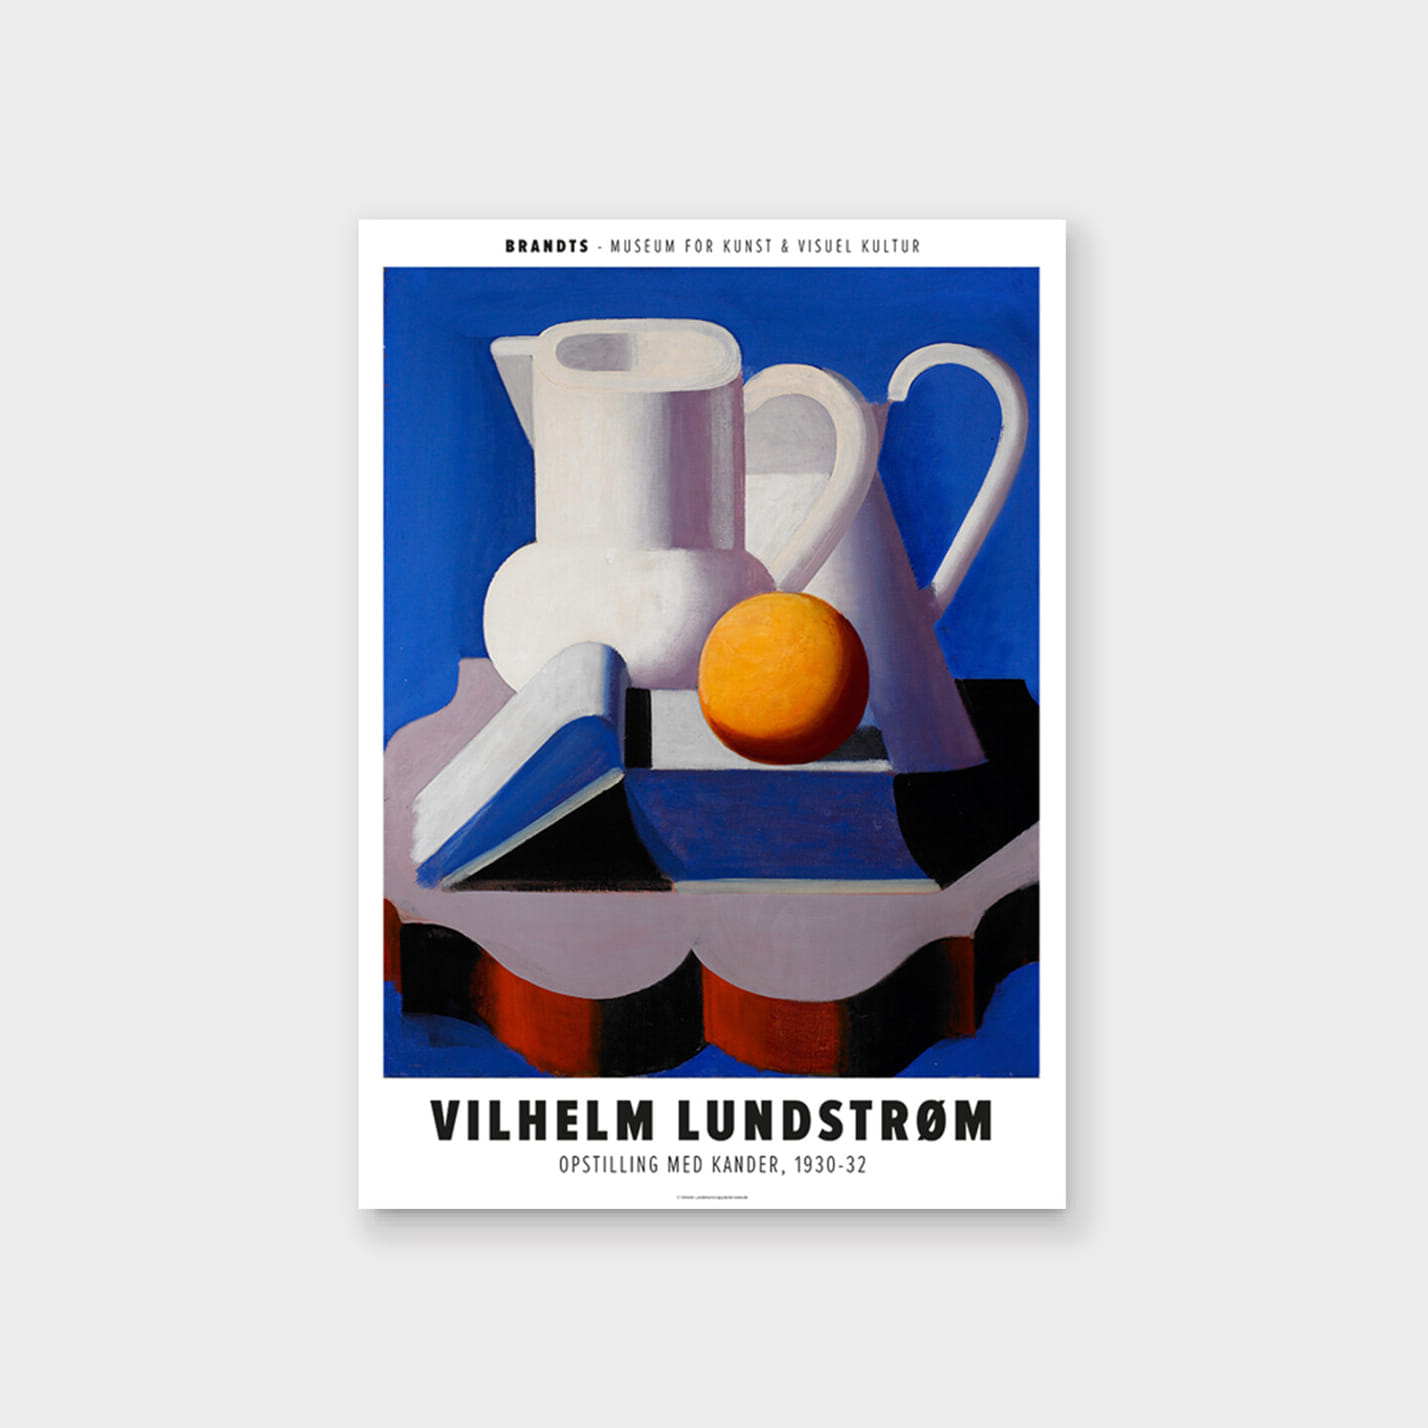 마이온프라이빗 빌헬름 룬드스트롬 VILHELM LUNDSTRØM - ARRANGEMENT WITH OBJETS 50 x 70 cm